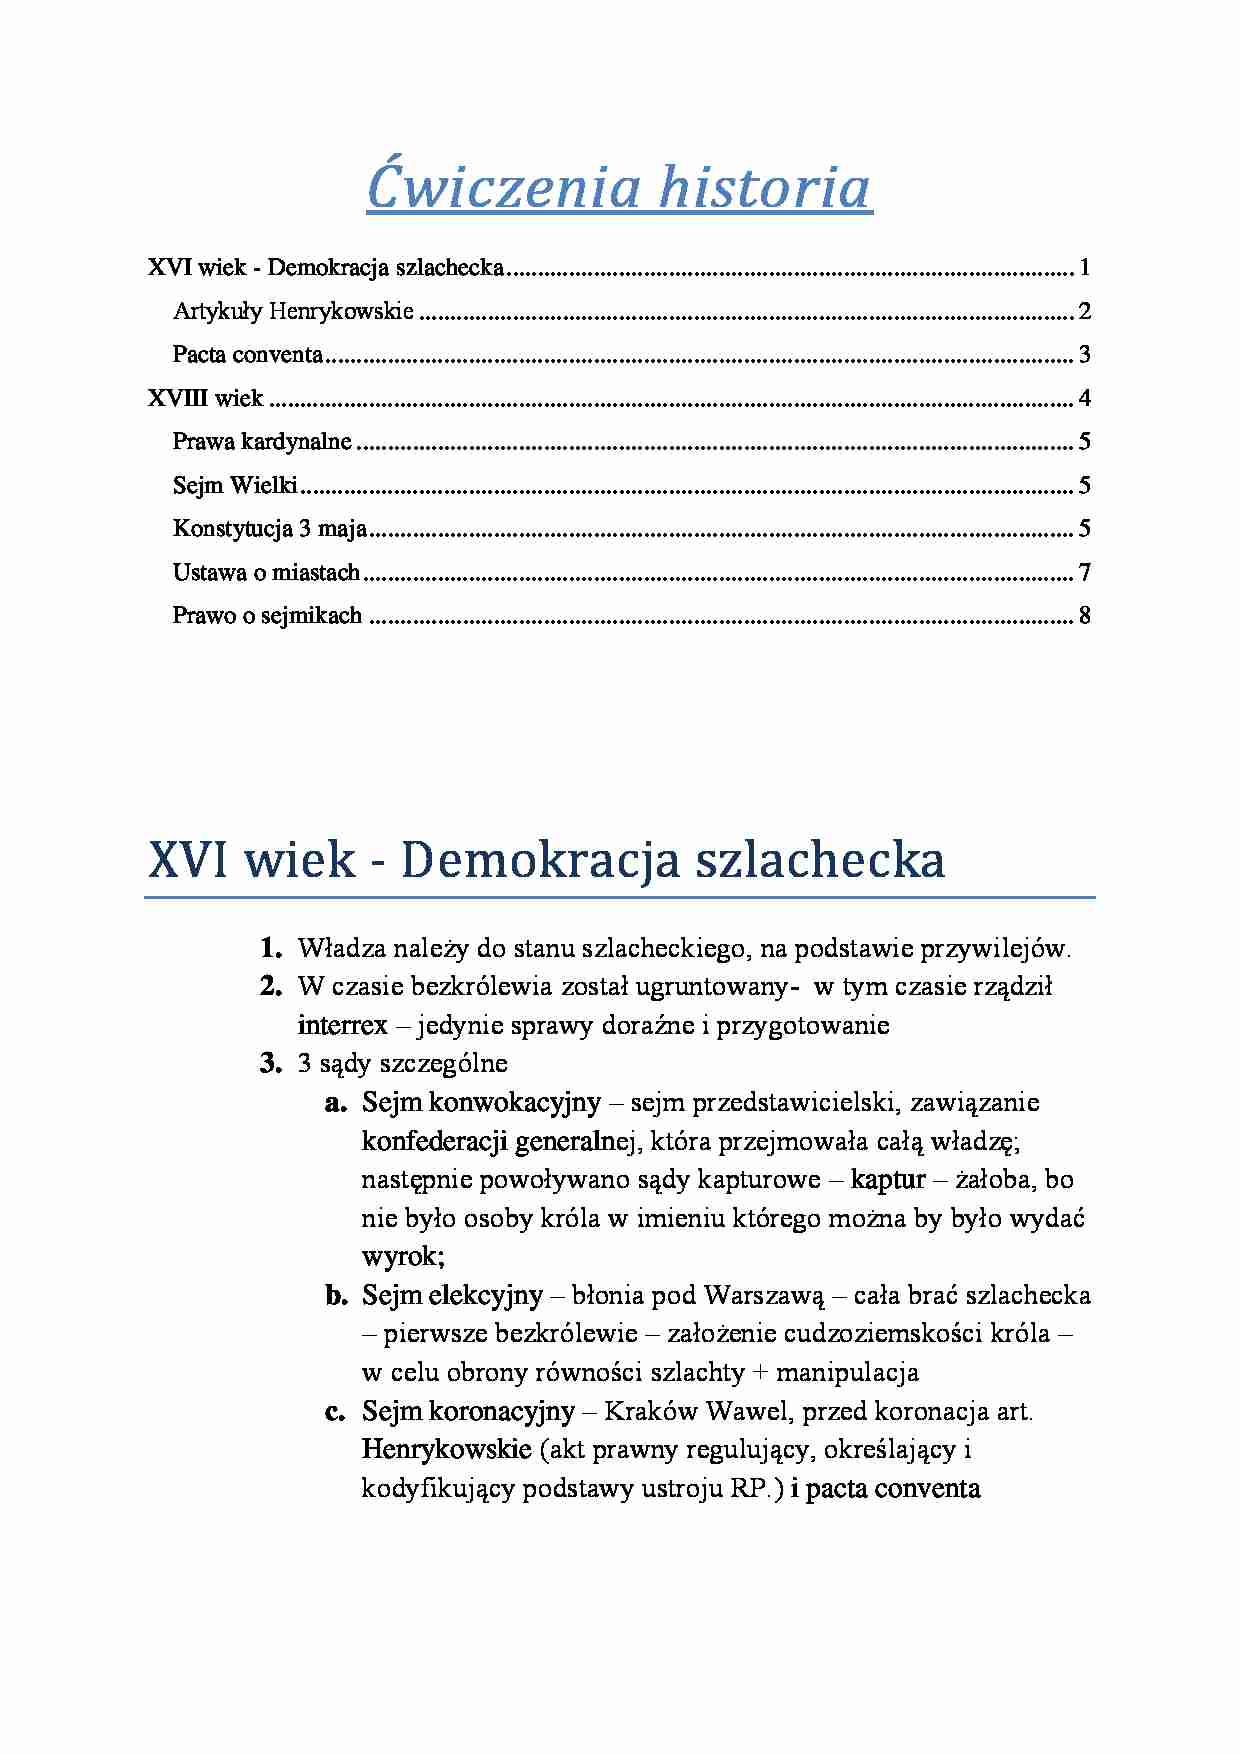 Historia państwa i prawa polskiego - skrypt - strona 1